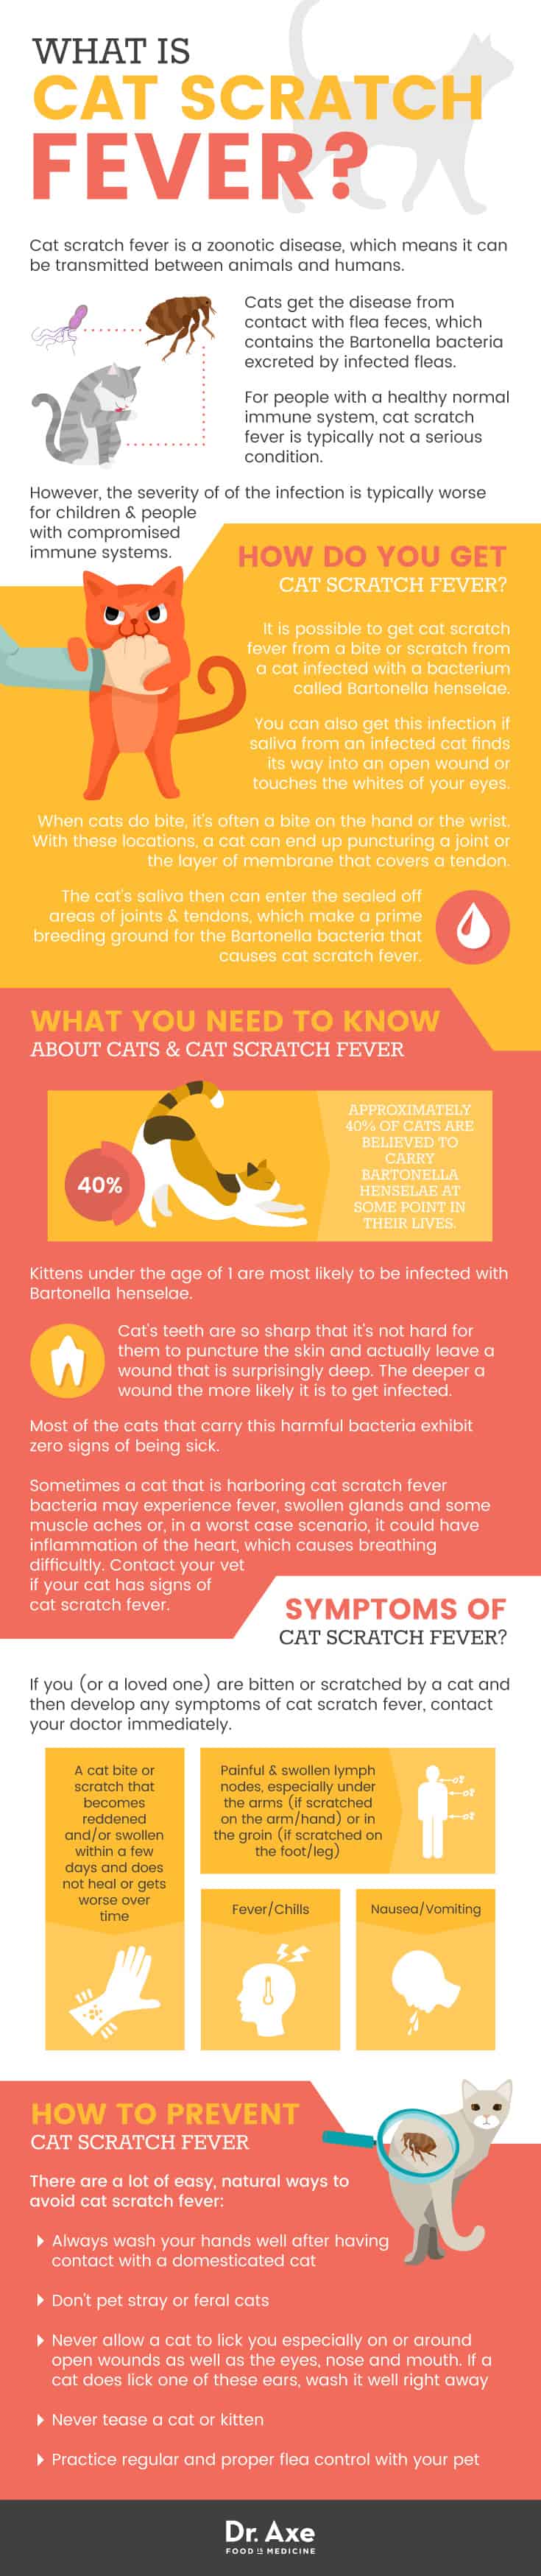 Cat scratch fever - Dr. Axe